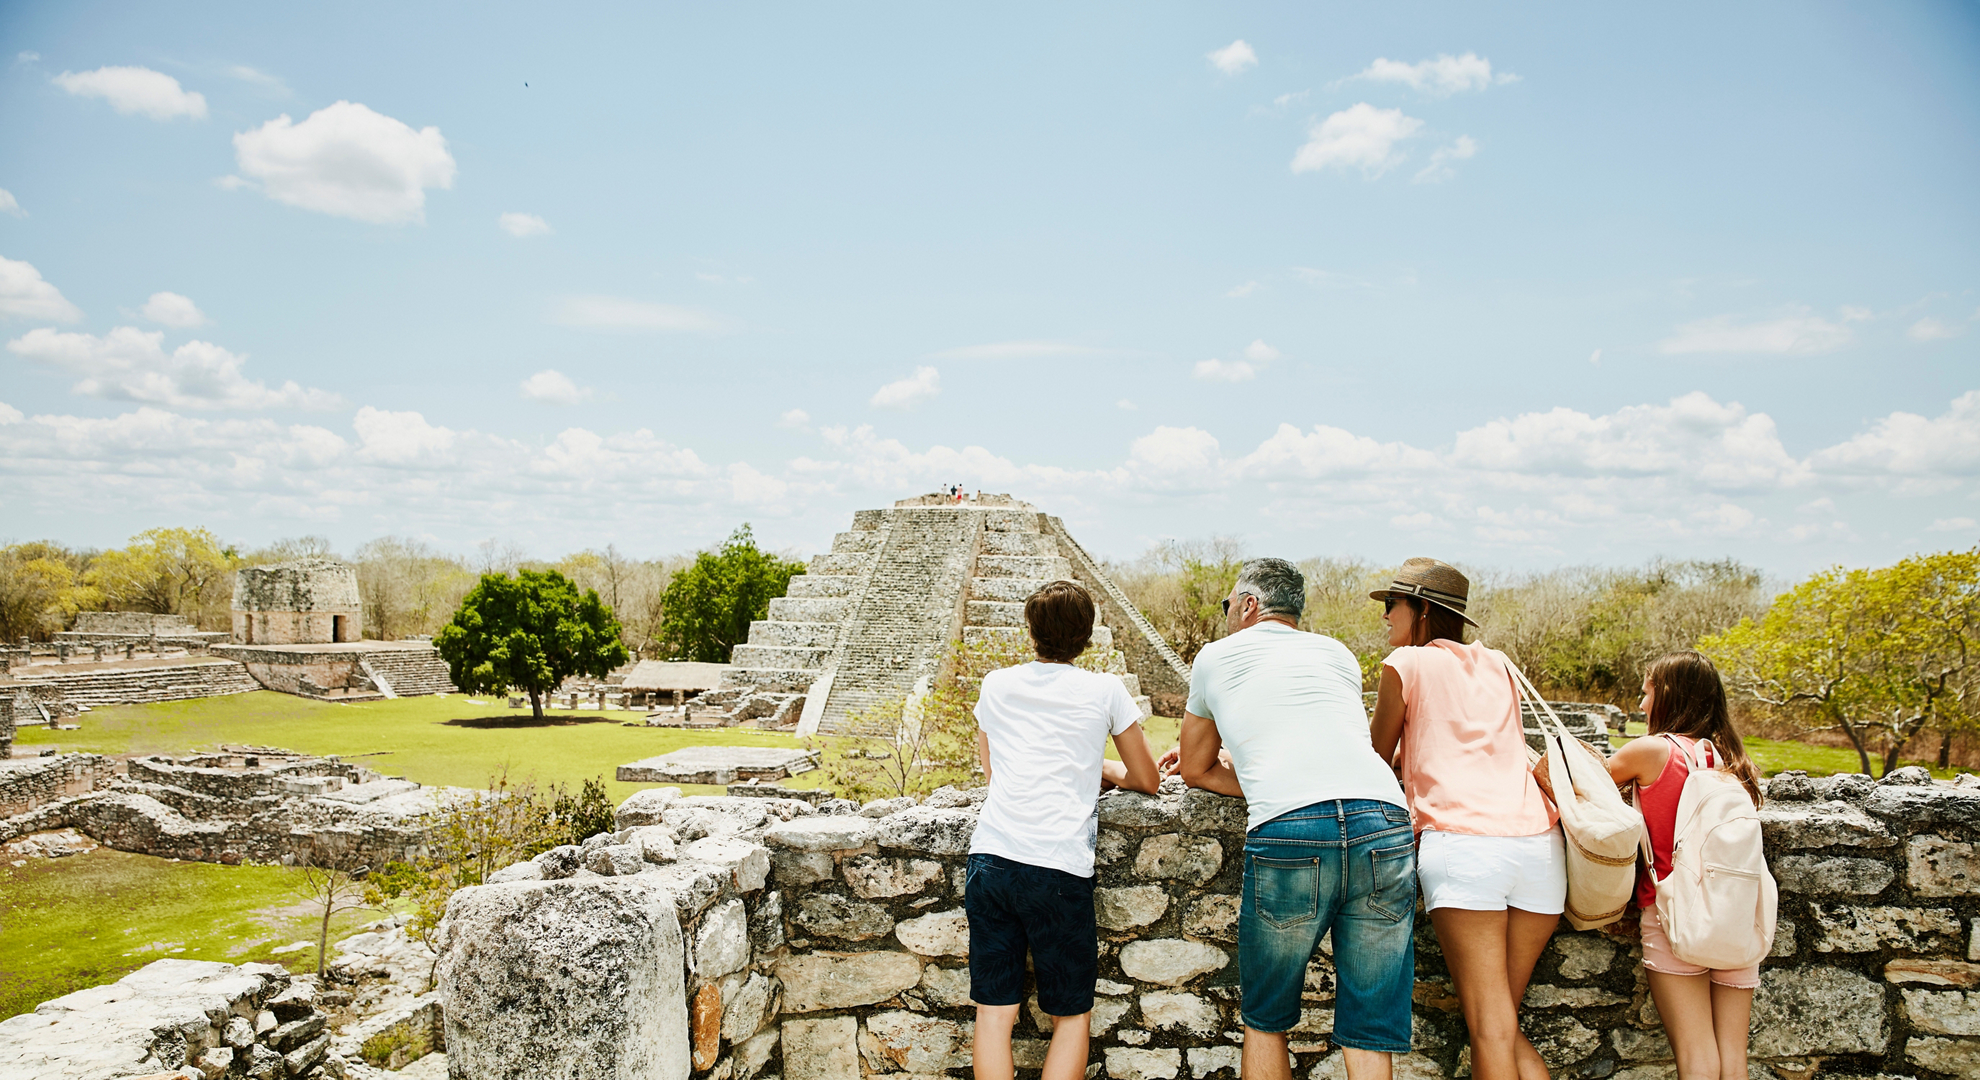 Family looking at view while exploring ruins at Mayapan during vacation